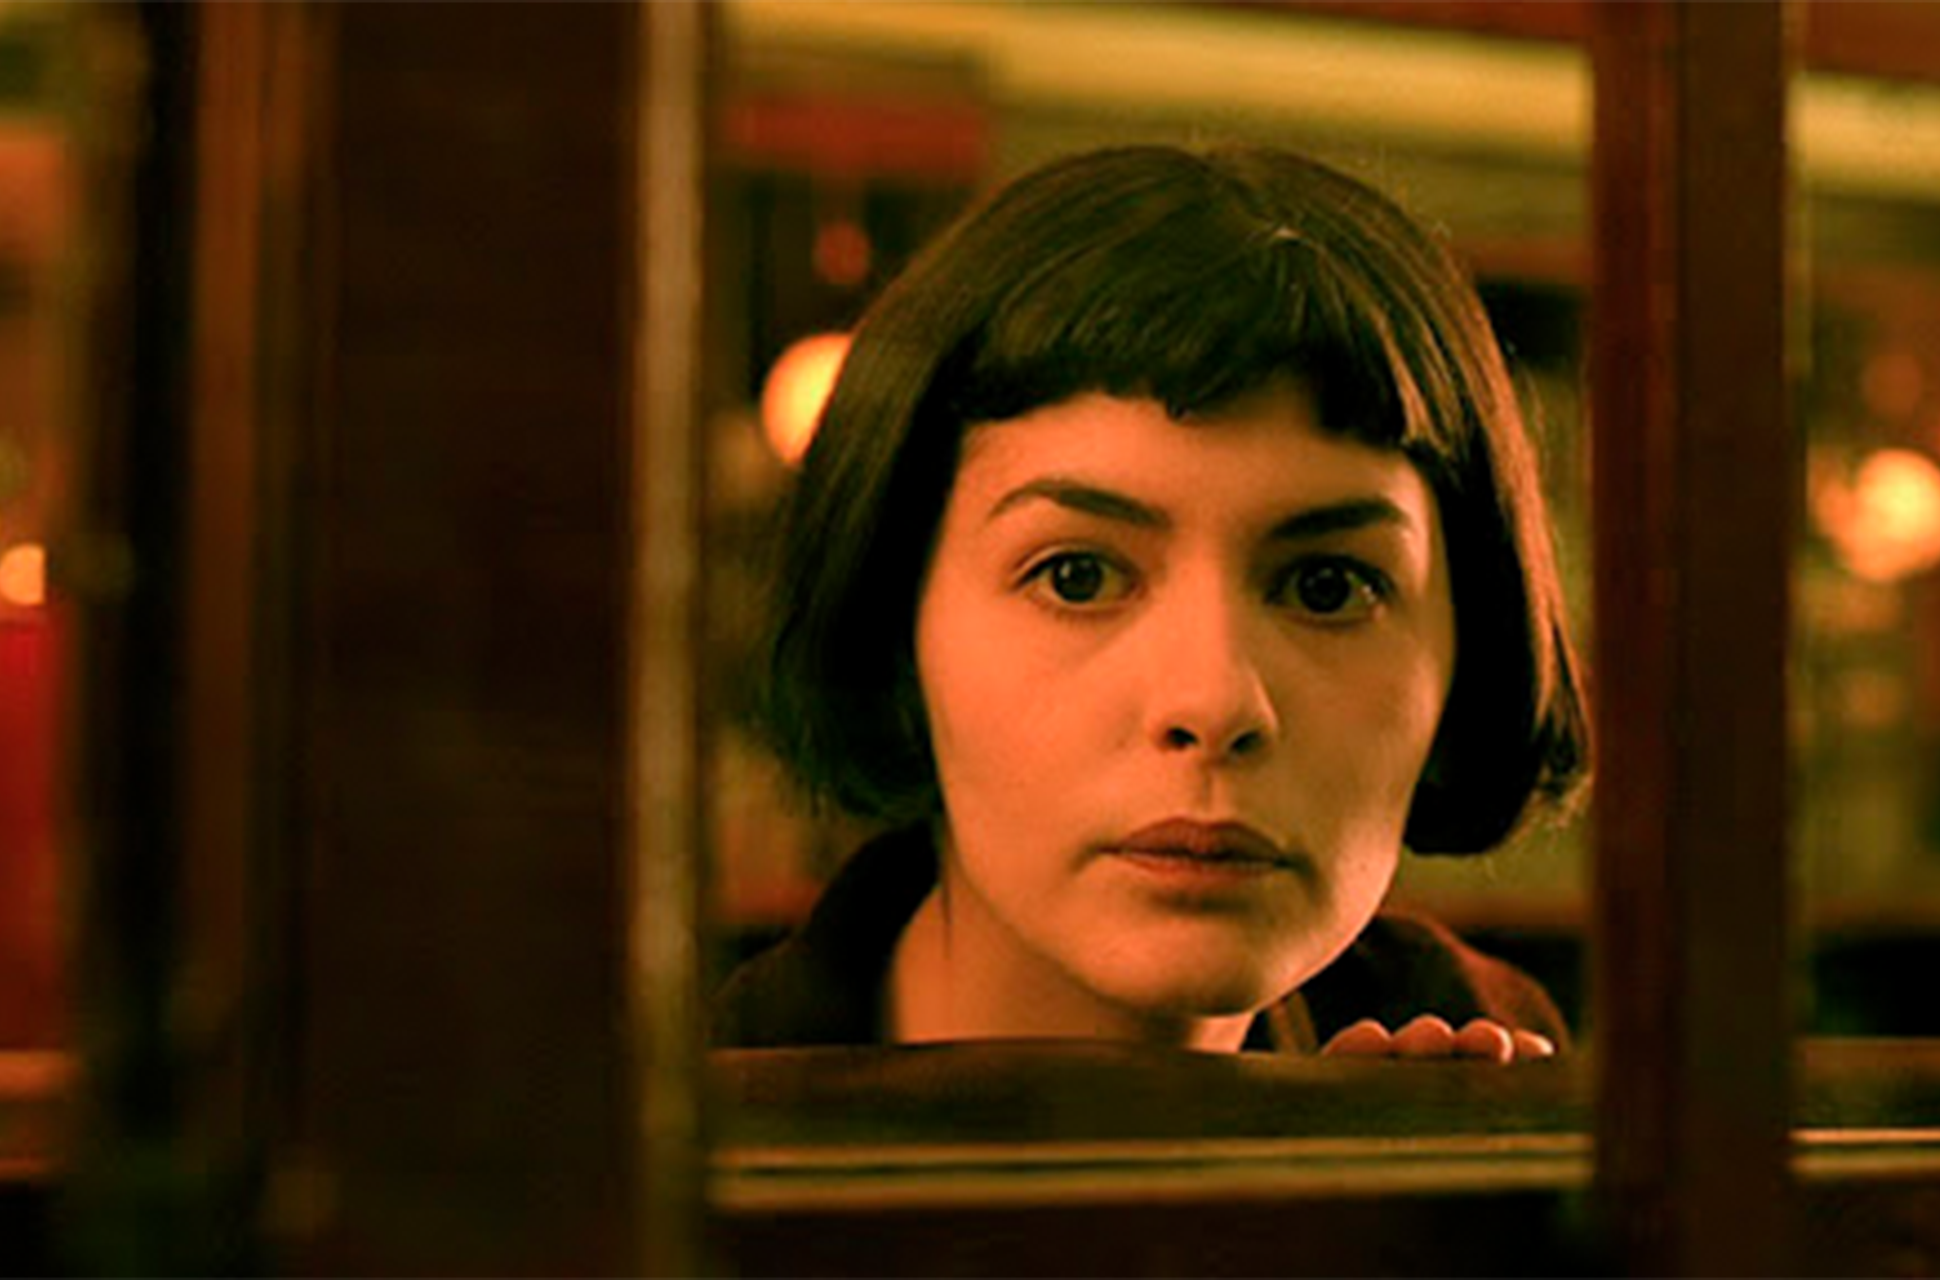 precedente oscuro para donar A veinte años del estreno de Amélie: ¿Realmente es una buena película?